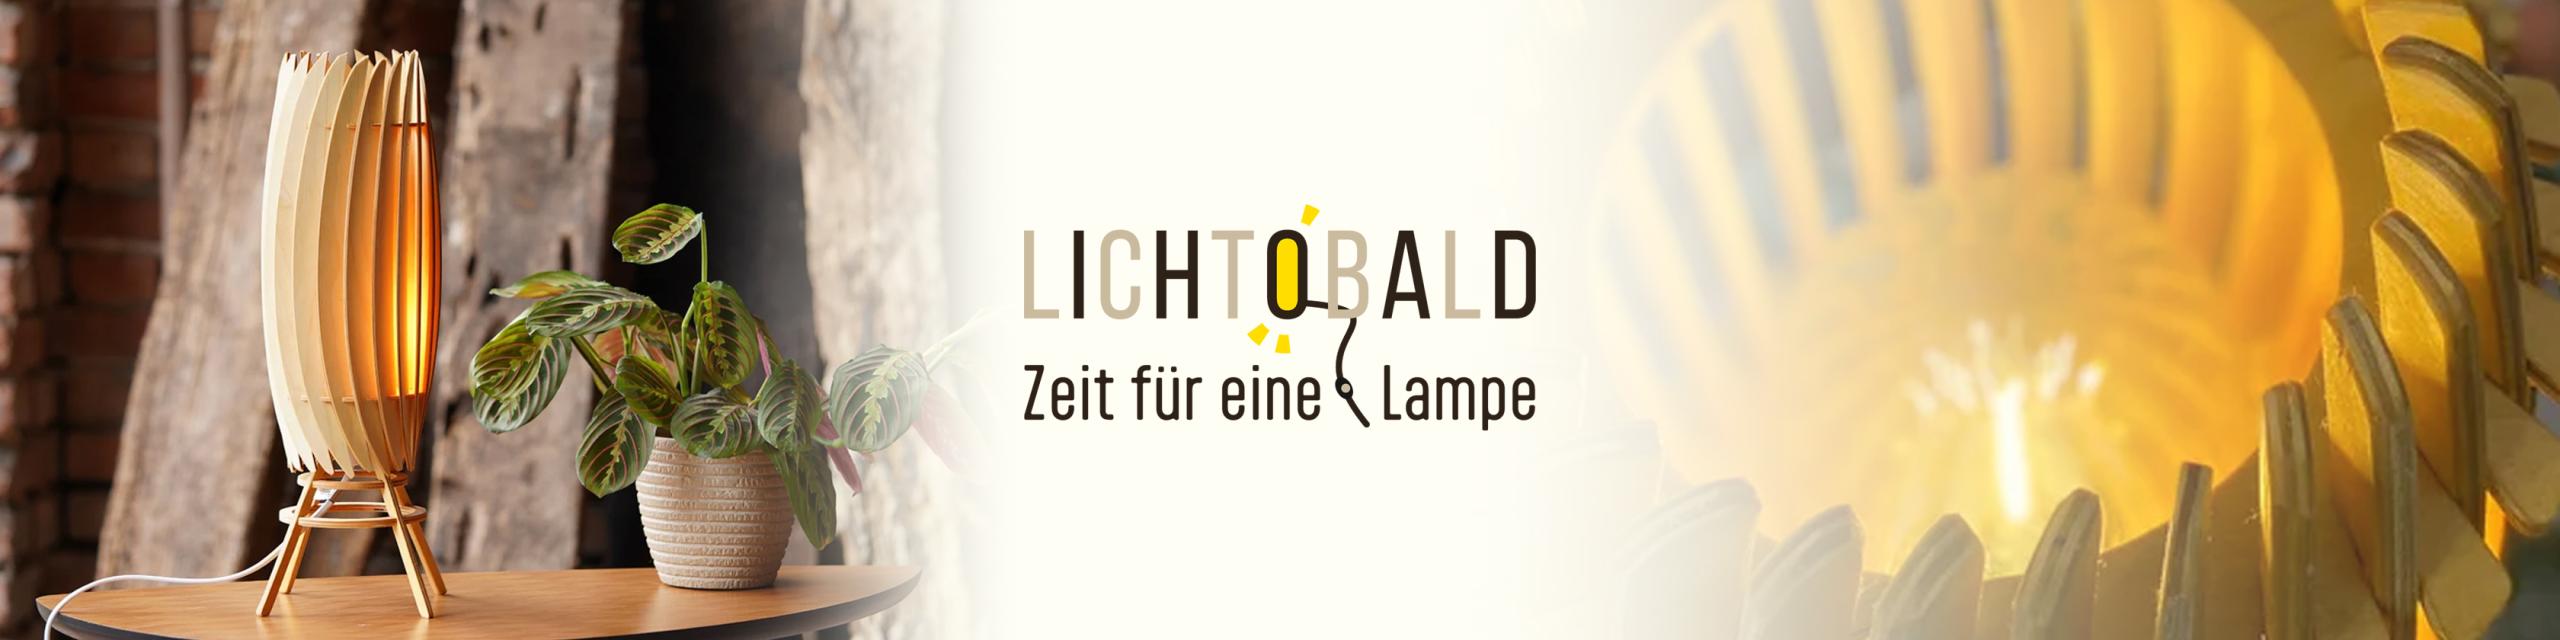 Lichtobald